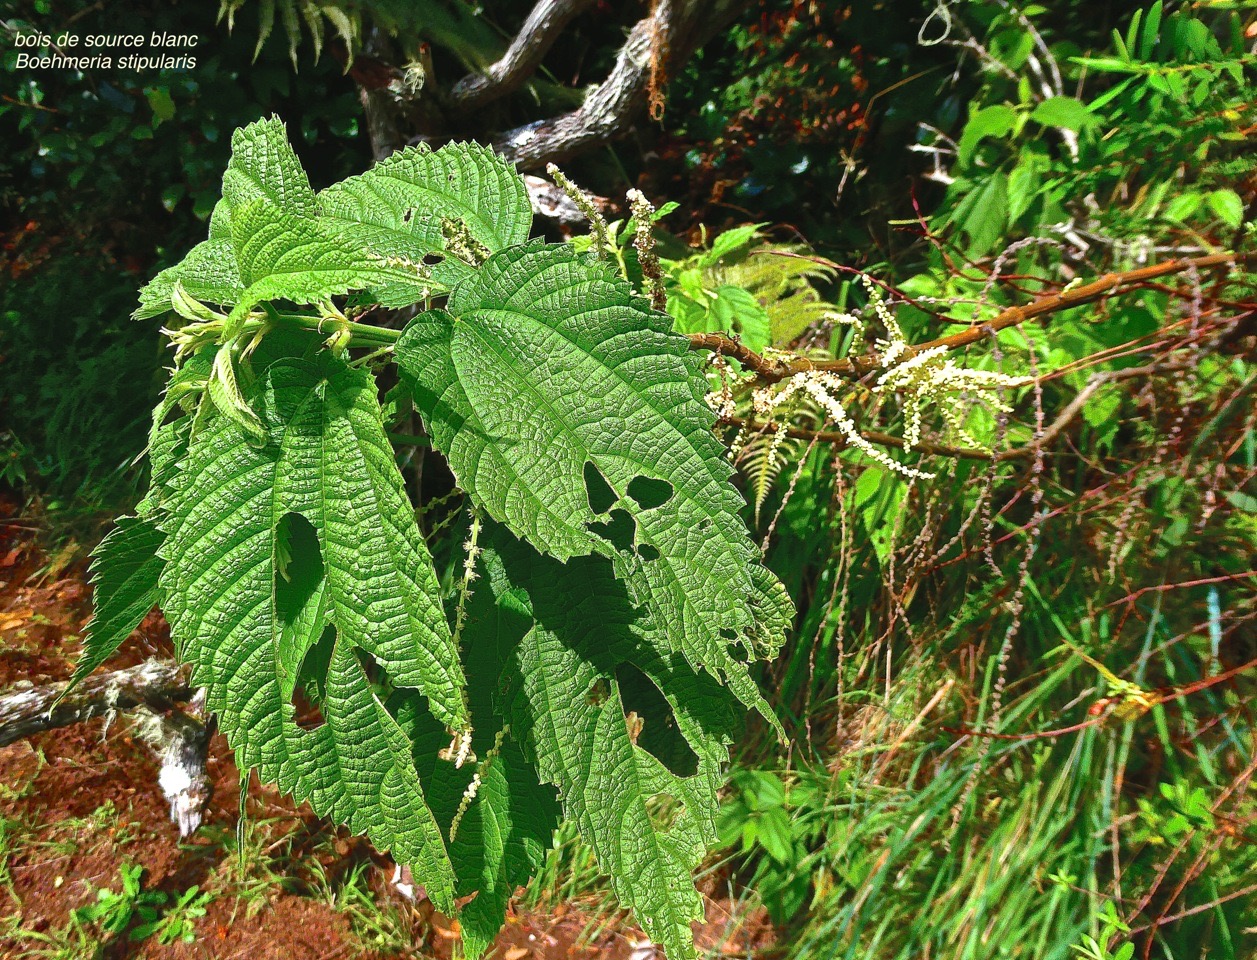 Boehmeria stipularis.bois de source blanc.grande ortie.urticaceae.endémique Réunion.P1025046